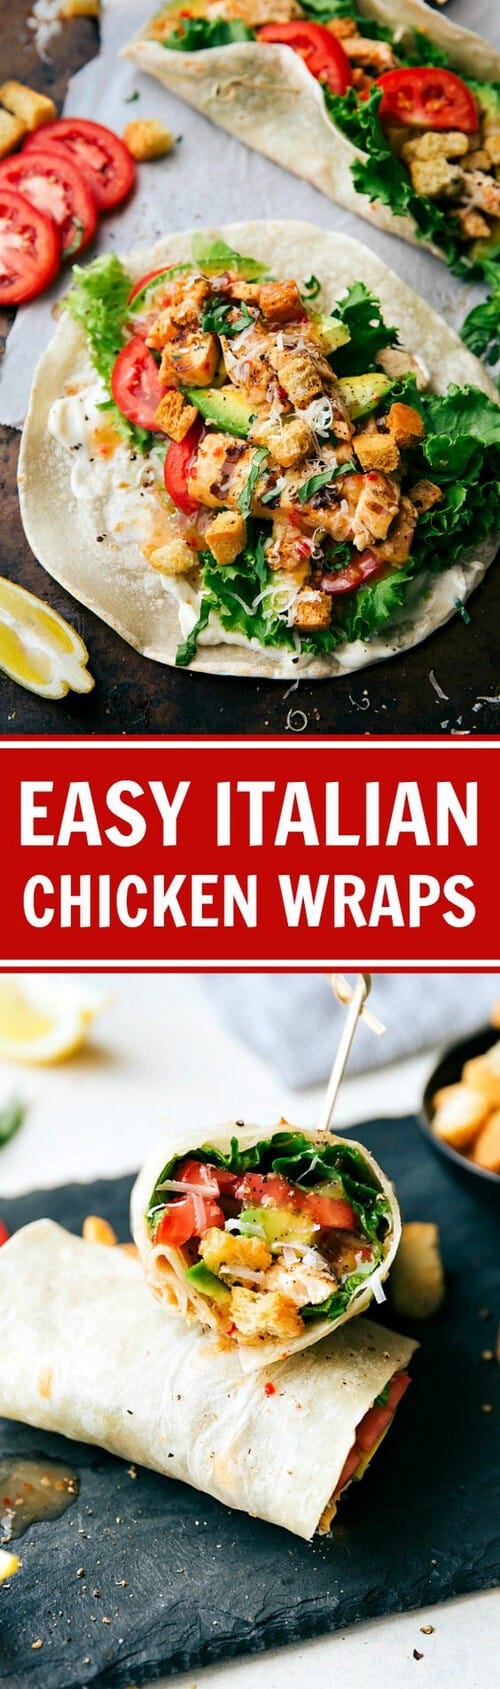 Mediterranean 10-Minute Italian Chicken Wraps